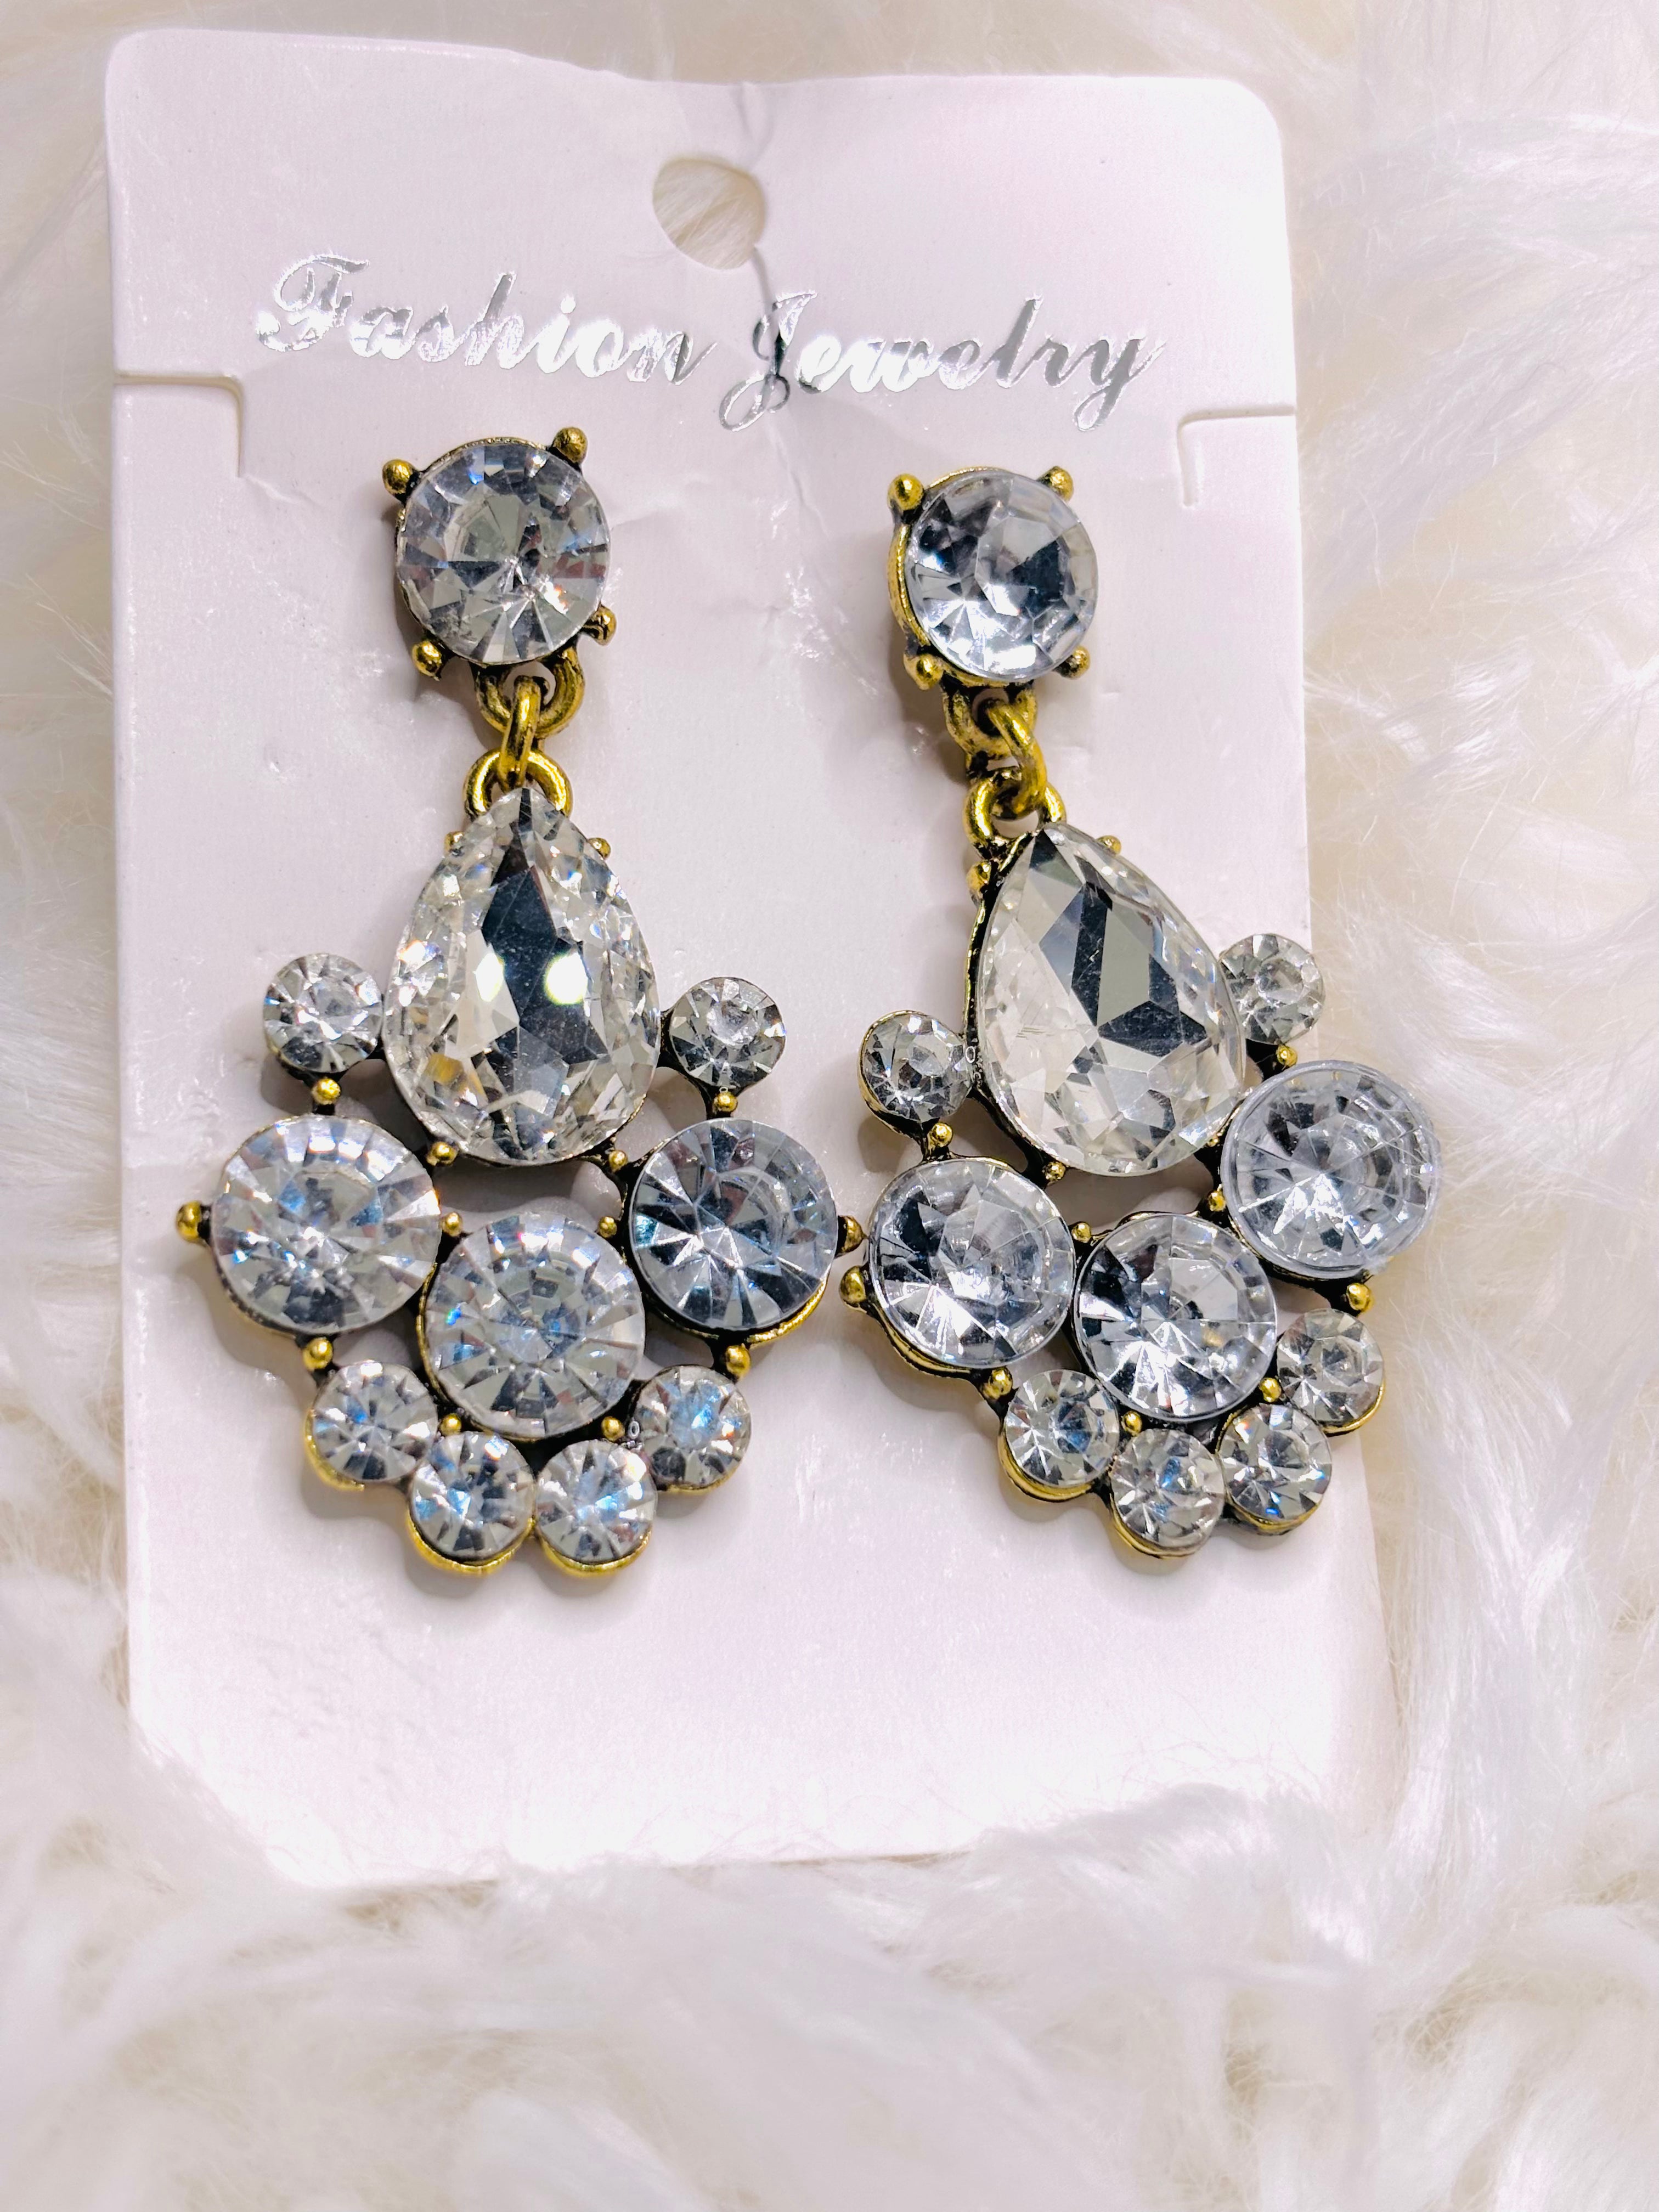 Stone earrings